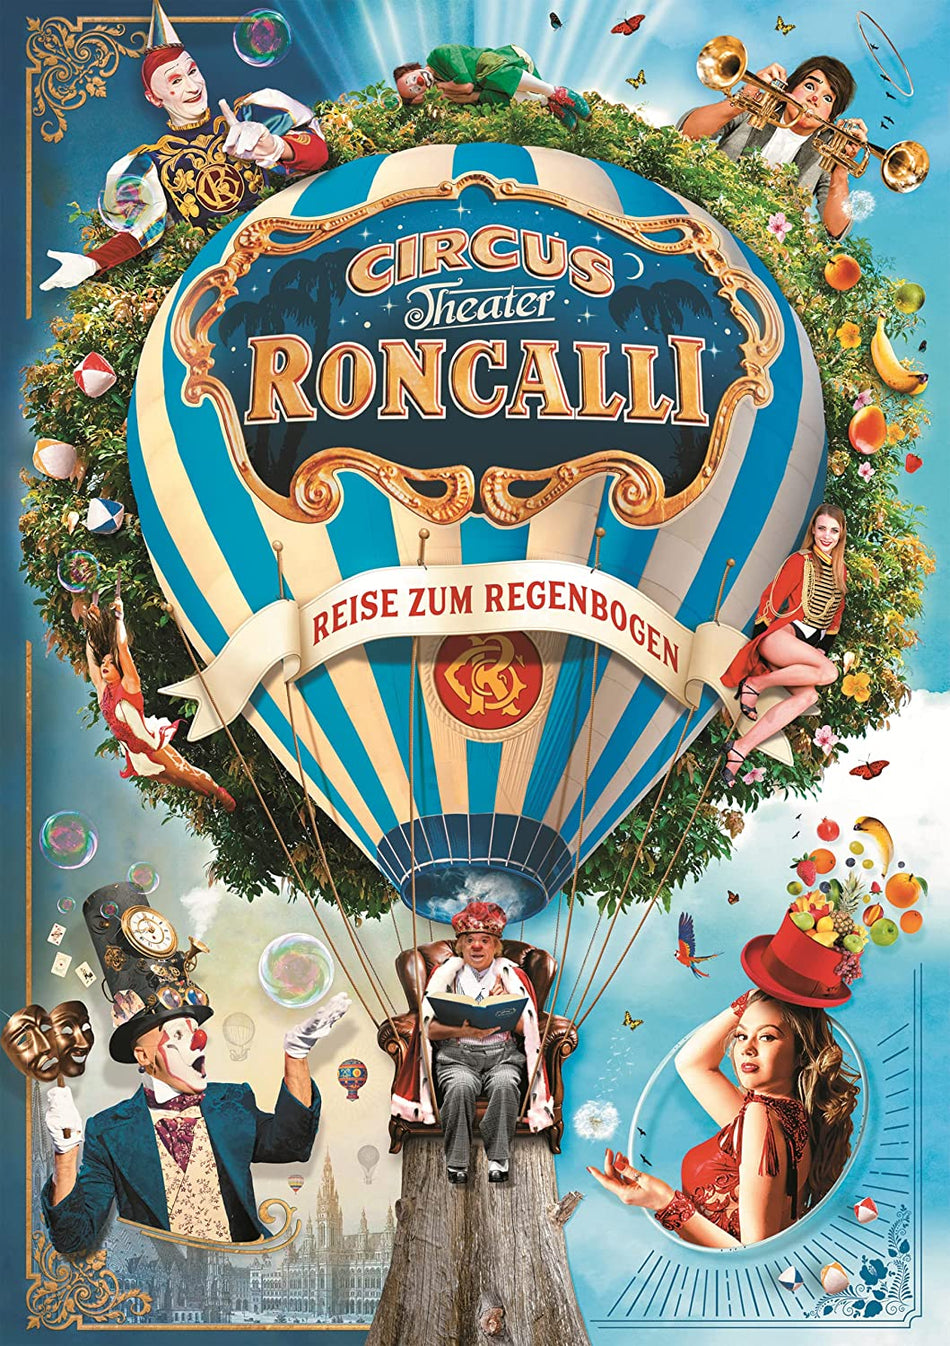 Piatnik: Circus - Theater Roncalli: 1000 Piece Puzzle